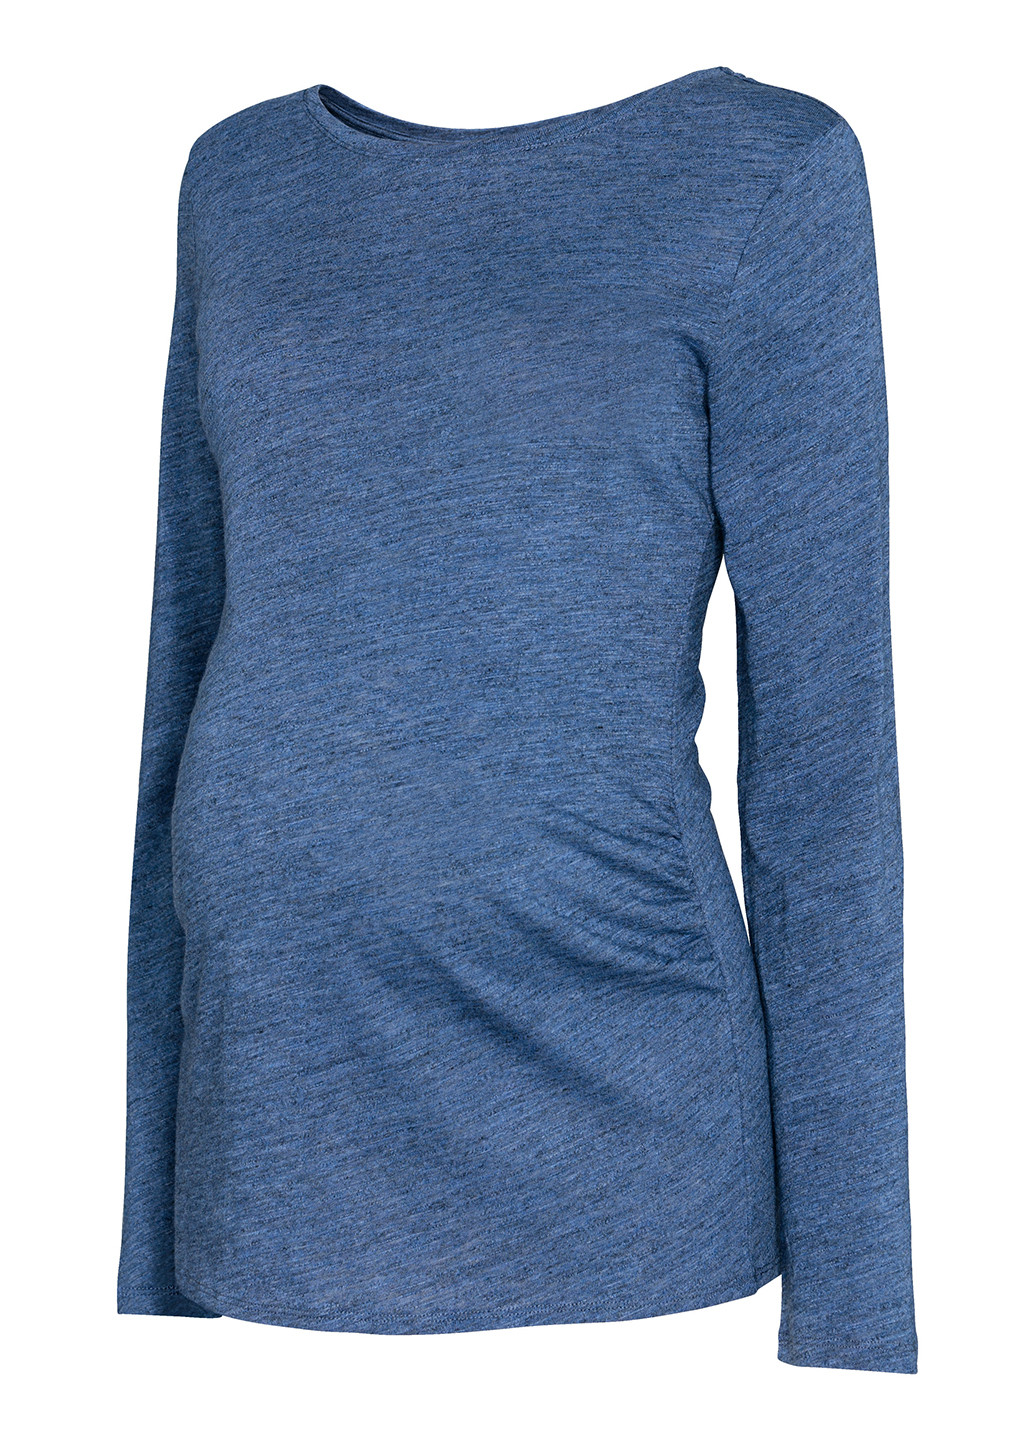 Темно-синий демисезонный джемпер для беременных джемпер H&M